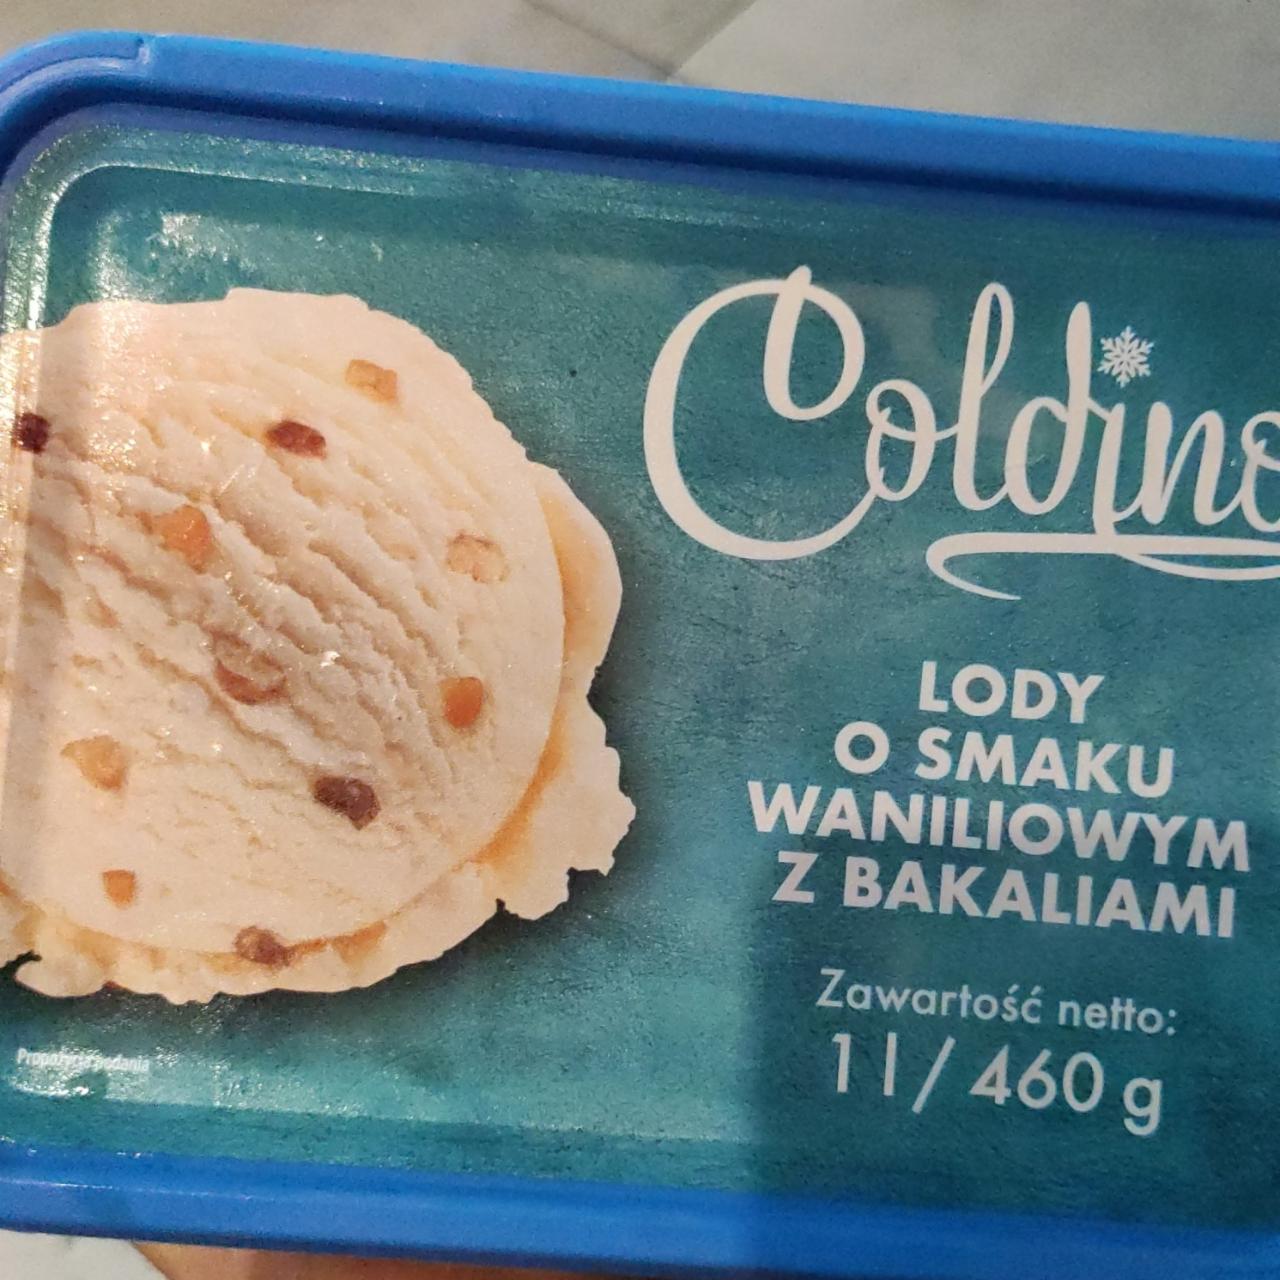 Zdjęcia - Coldino lody o smaku waniliowym z bakaliami